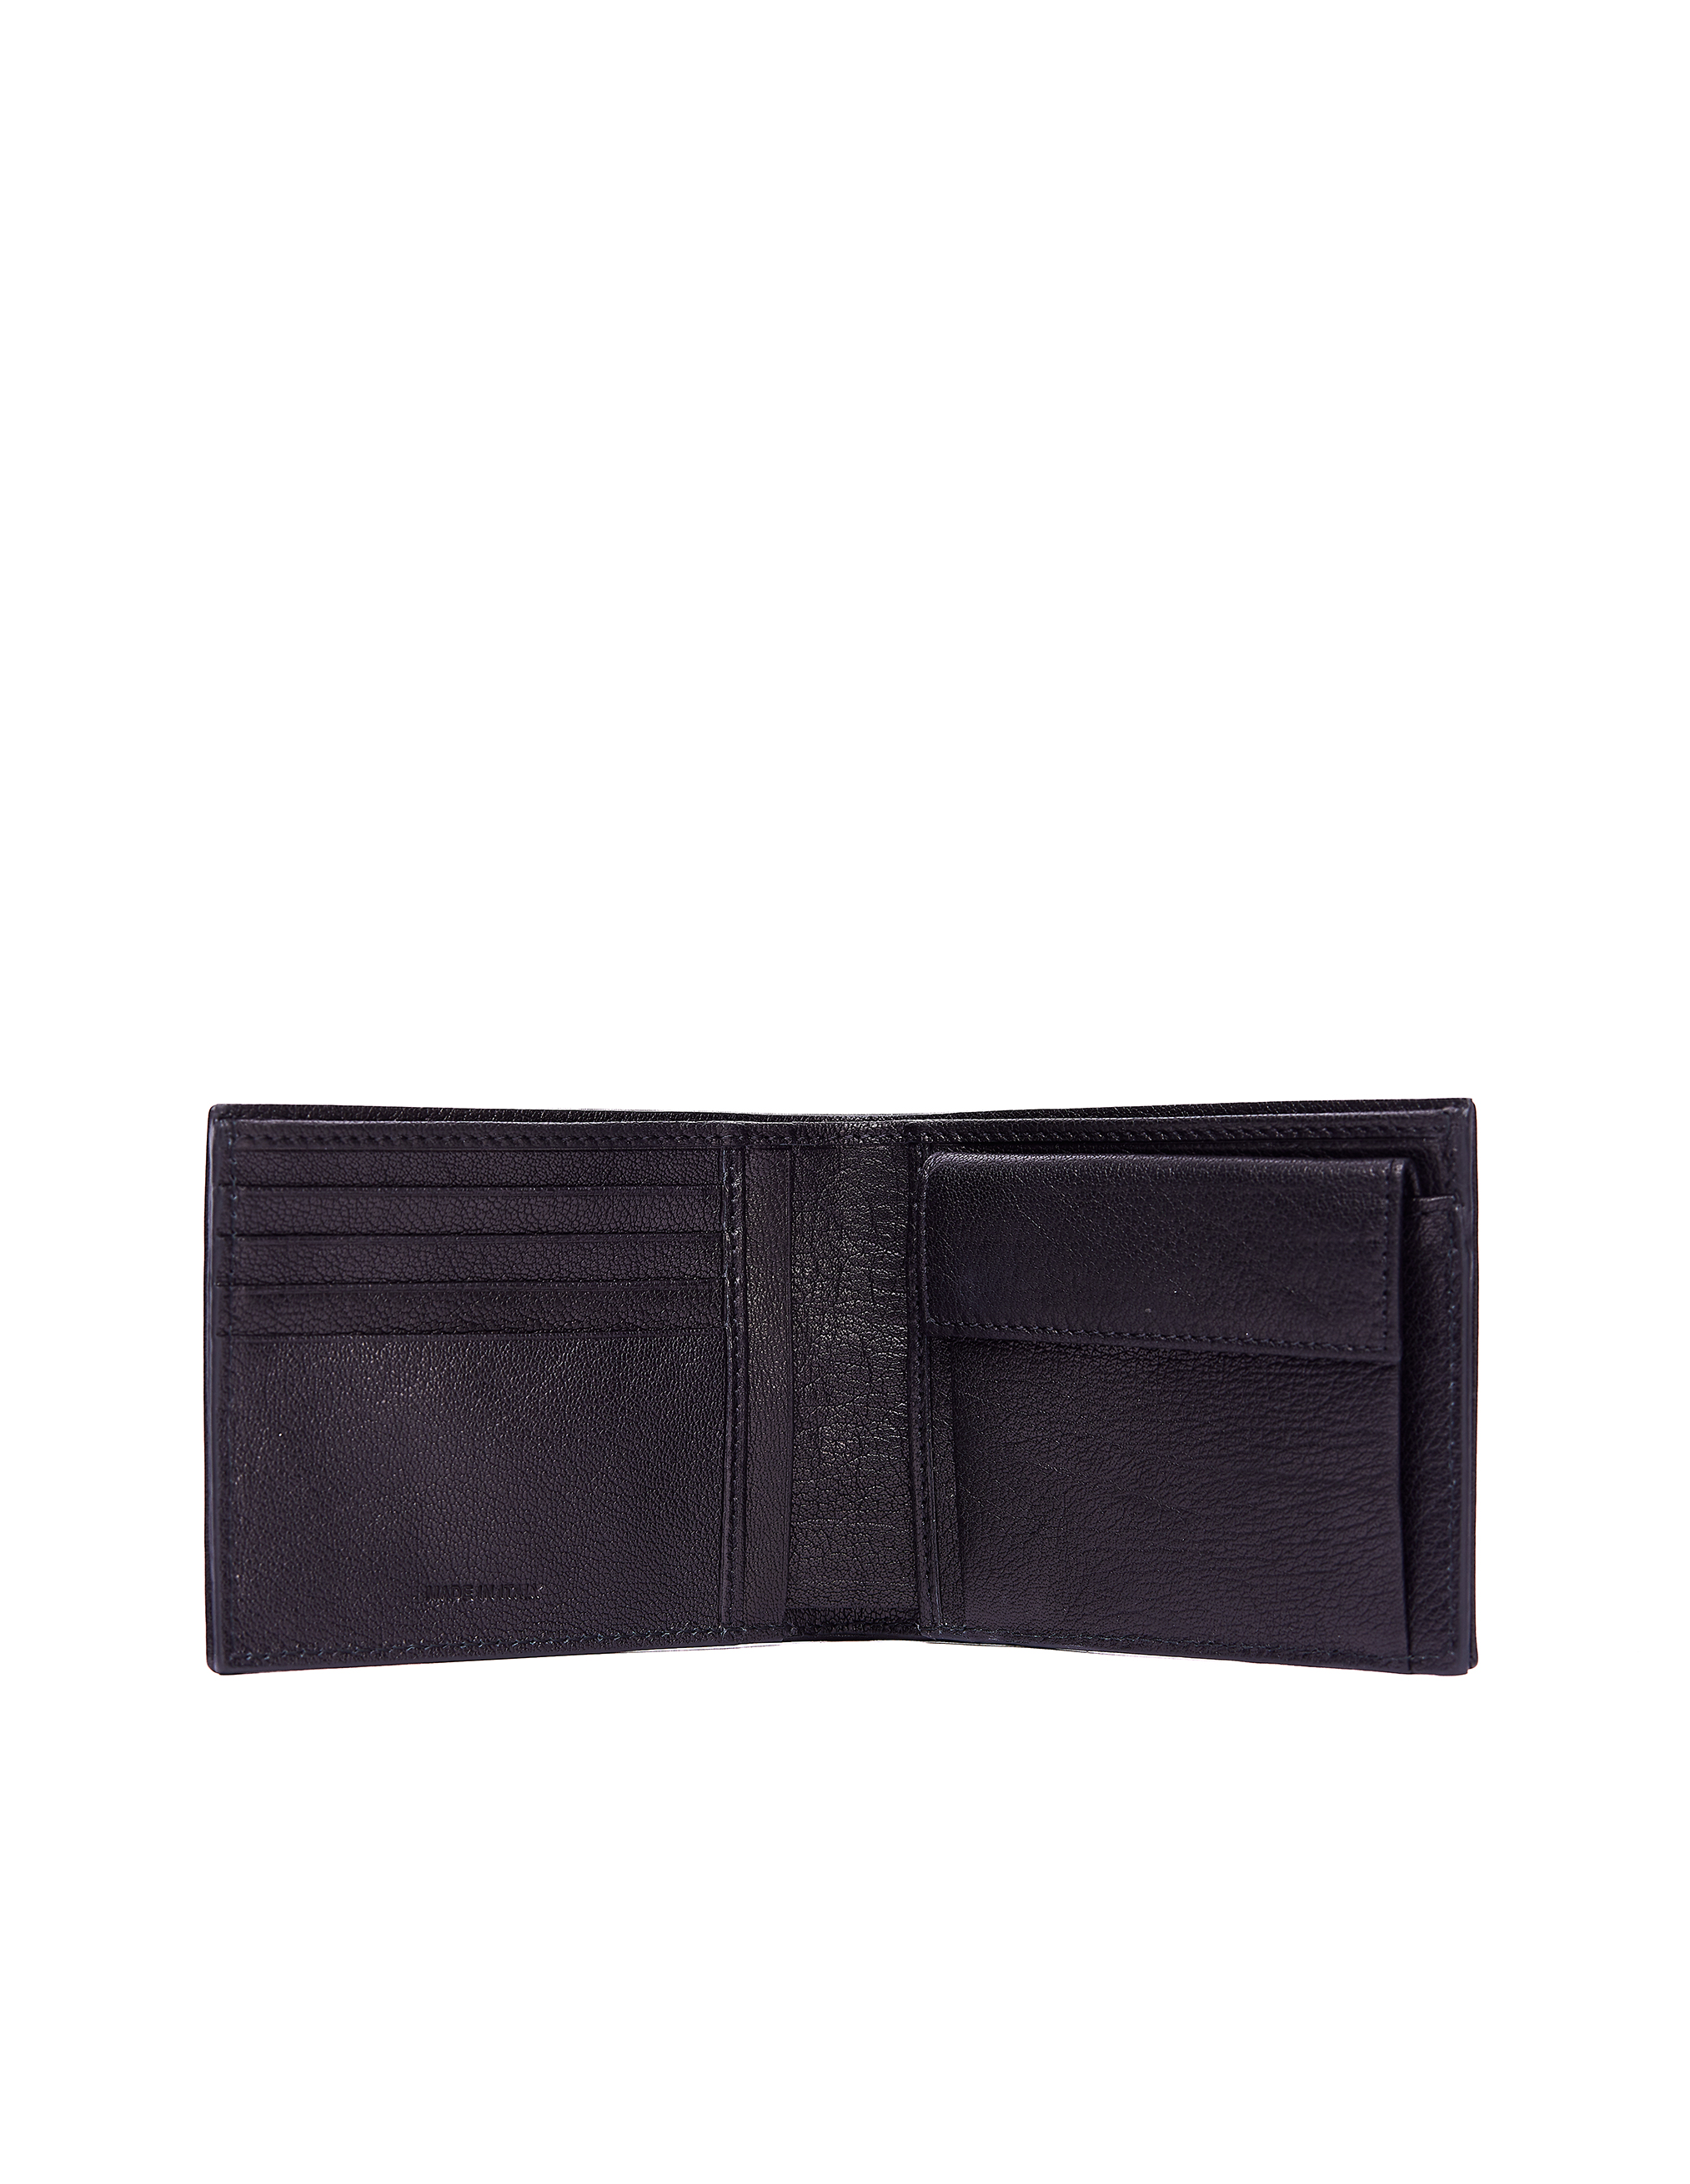 Черный кожаный кошелек Pocket Ugo Cacciatori WL141/VGN, размер One Size WL141/VGN - фото 2